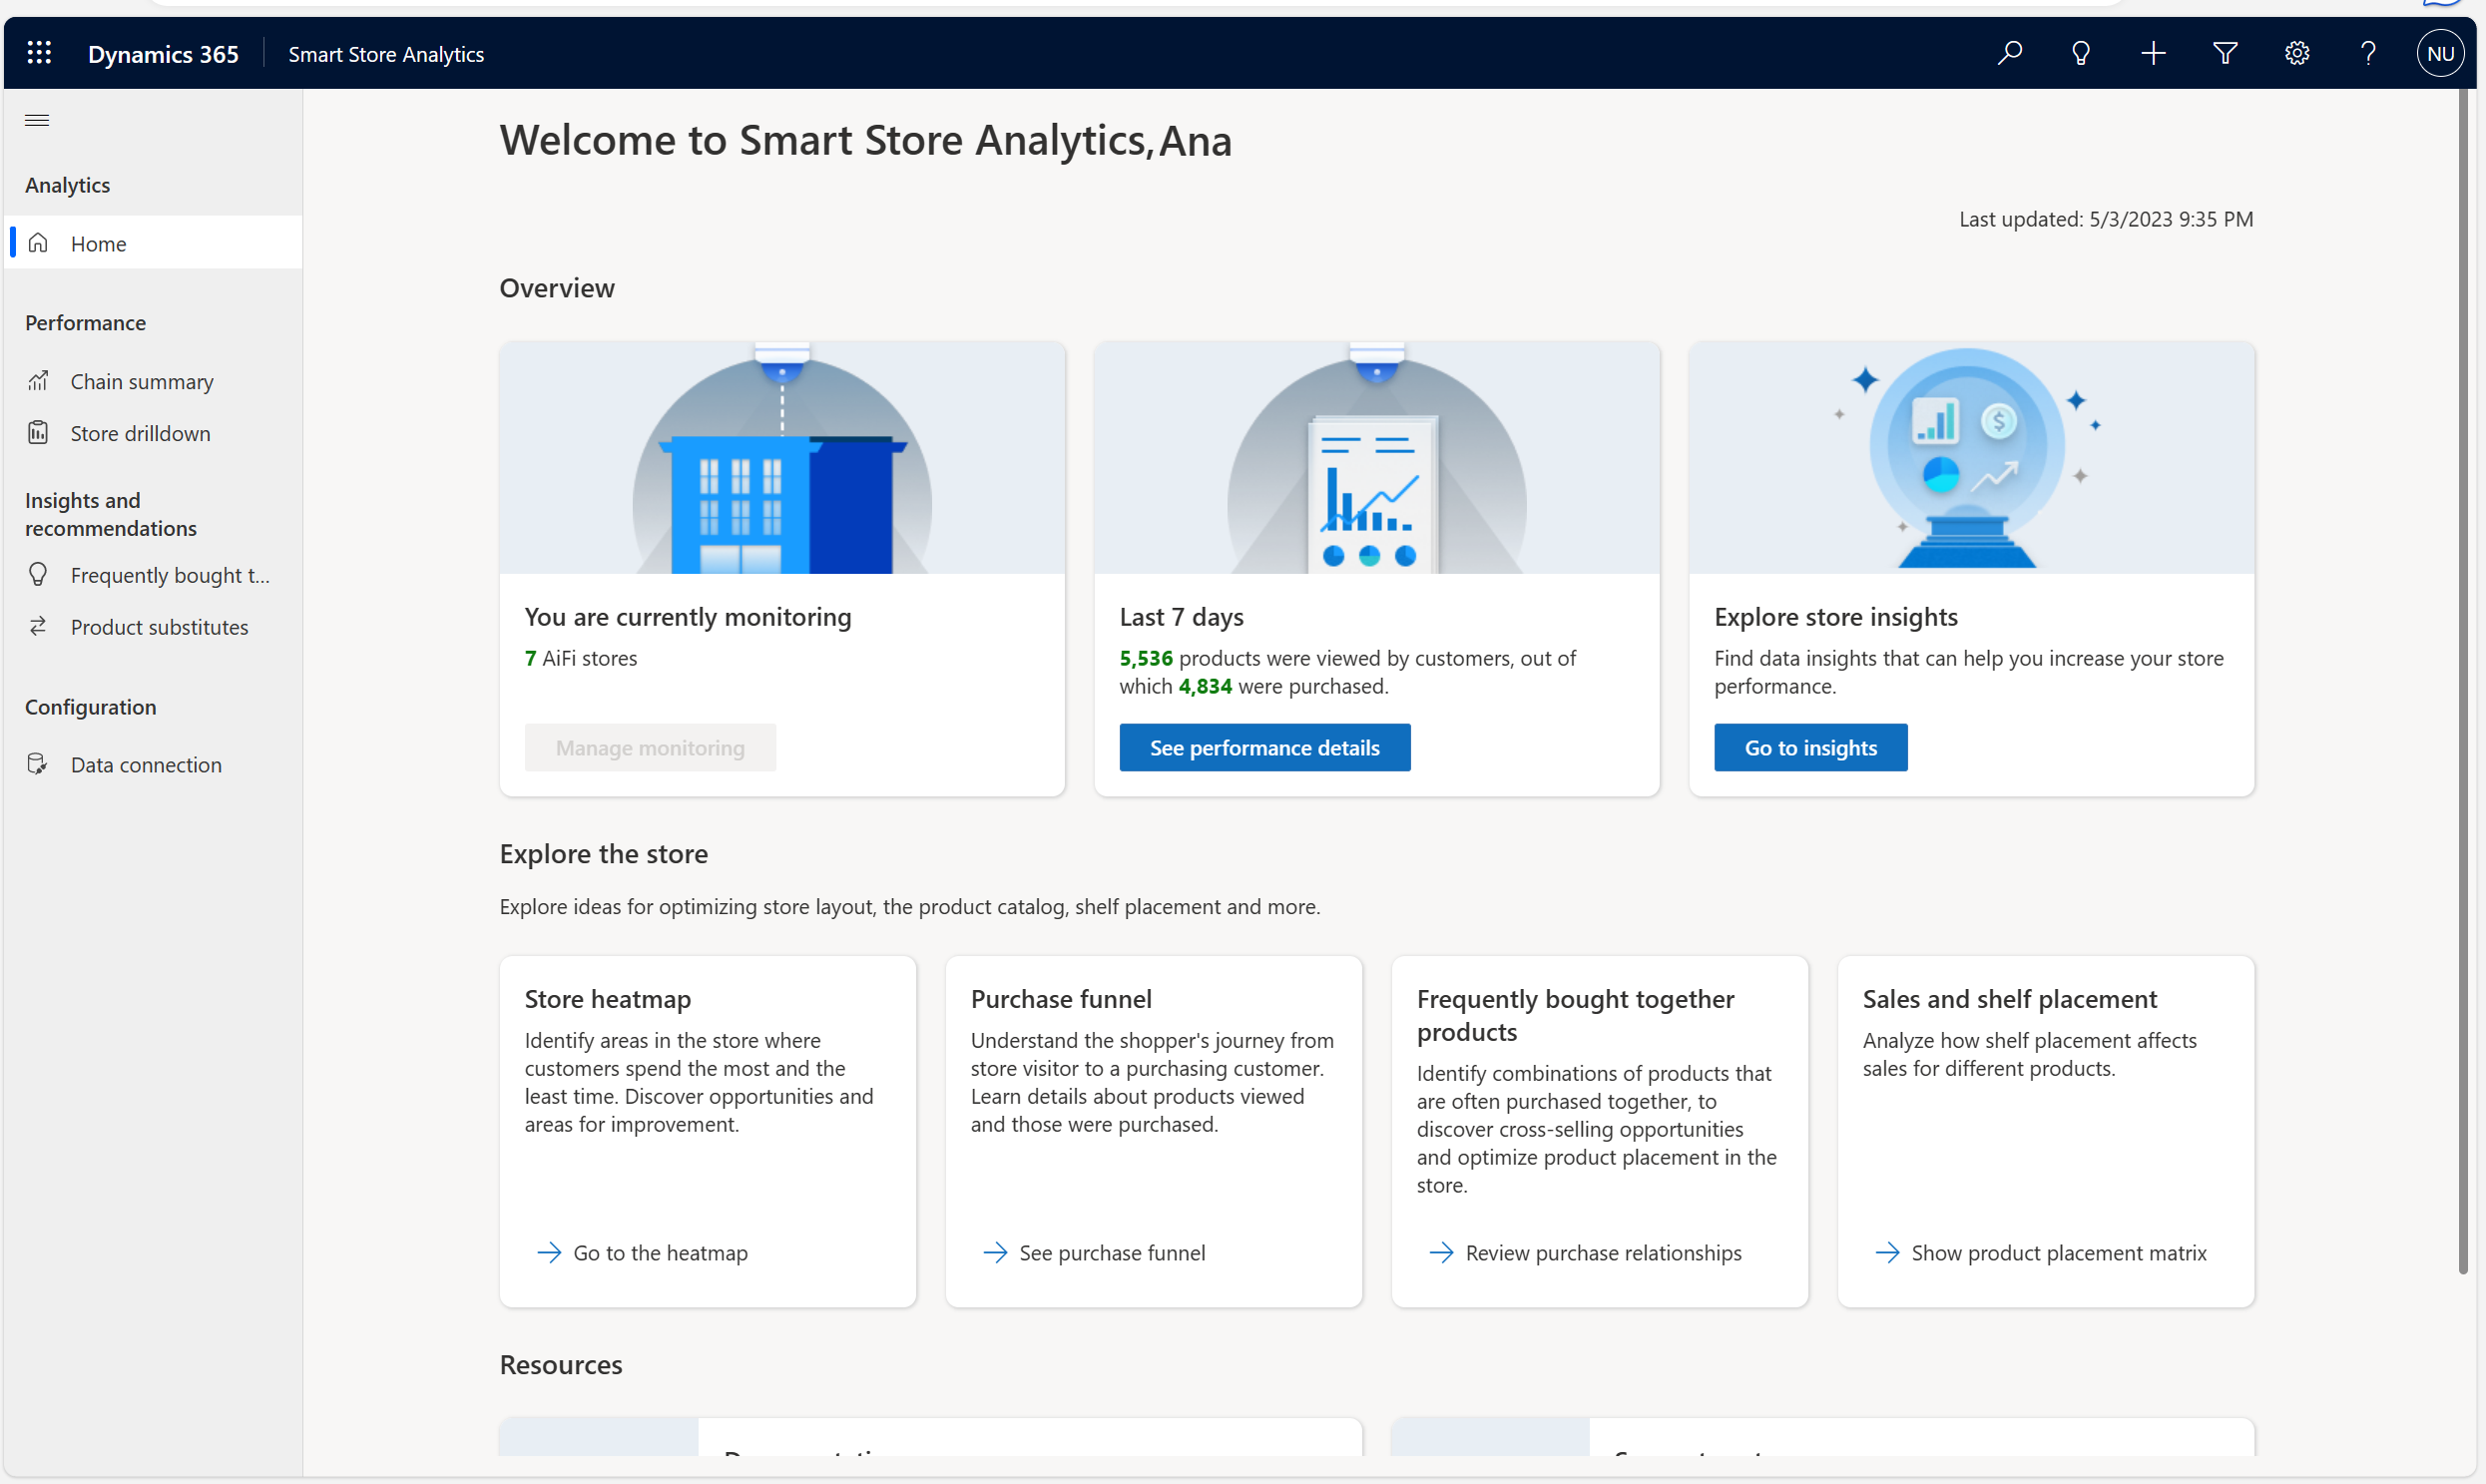 この画像は、Smart Store Analytics ソリューションのホームページを示しています。